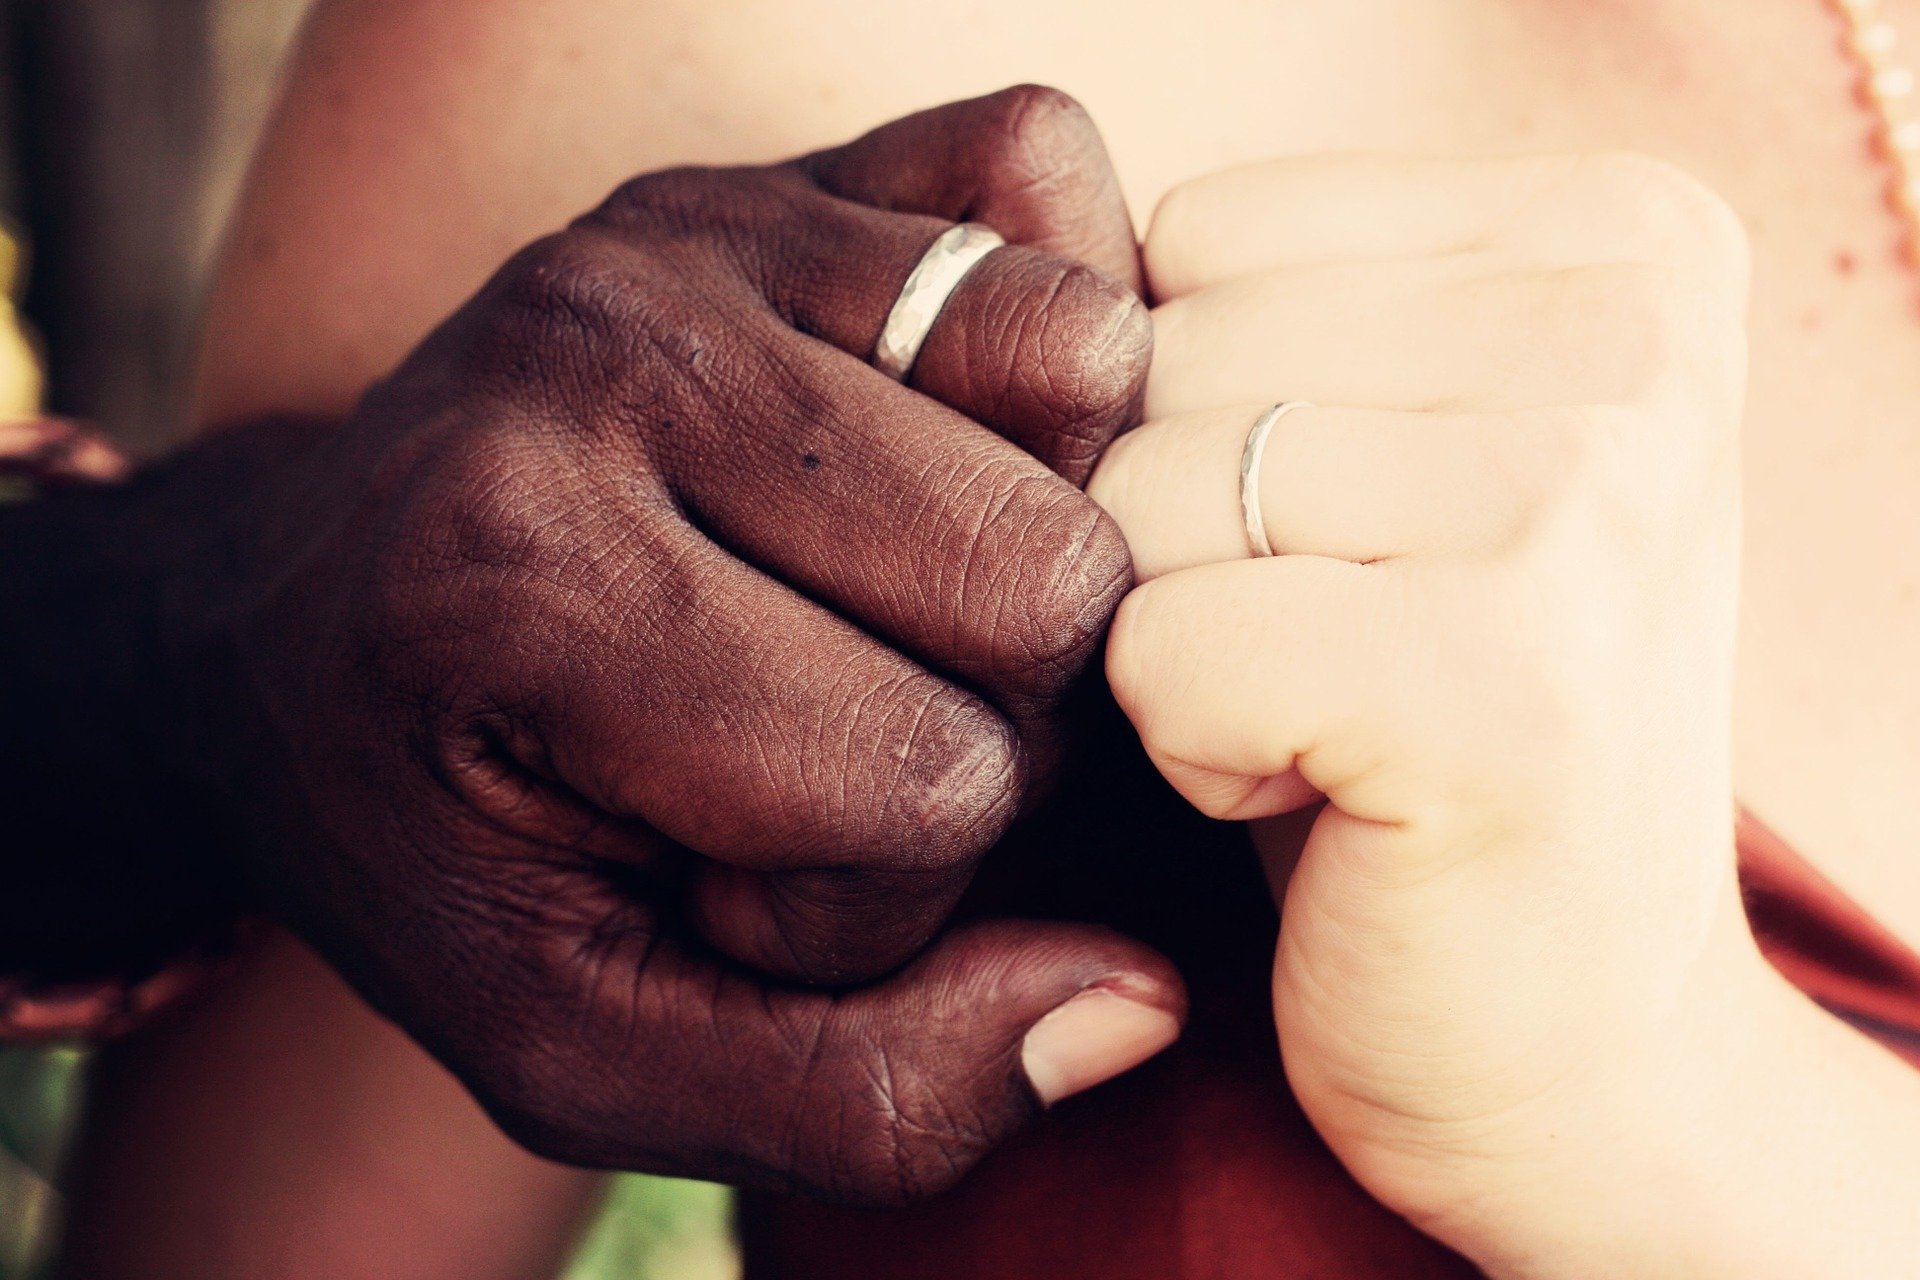 Foto de mãos, uma feminina branca e uma masculina negra, mostrando alianças de noivado